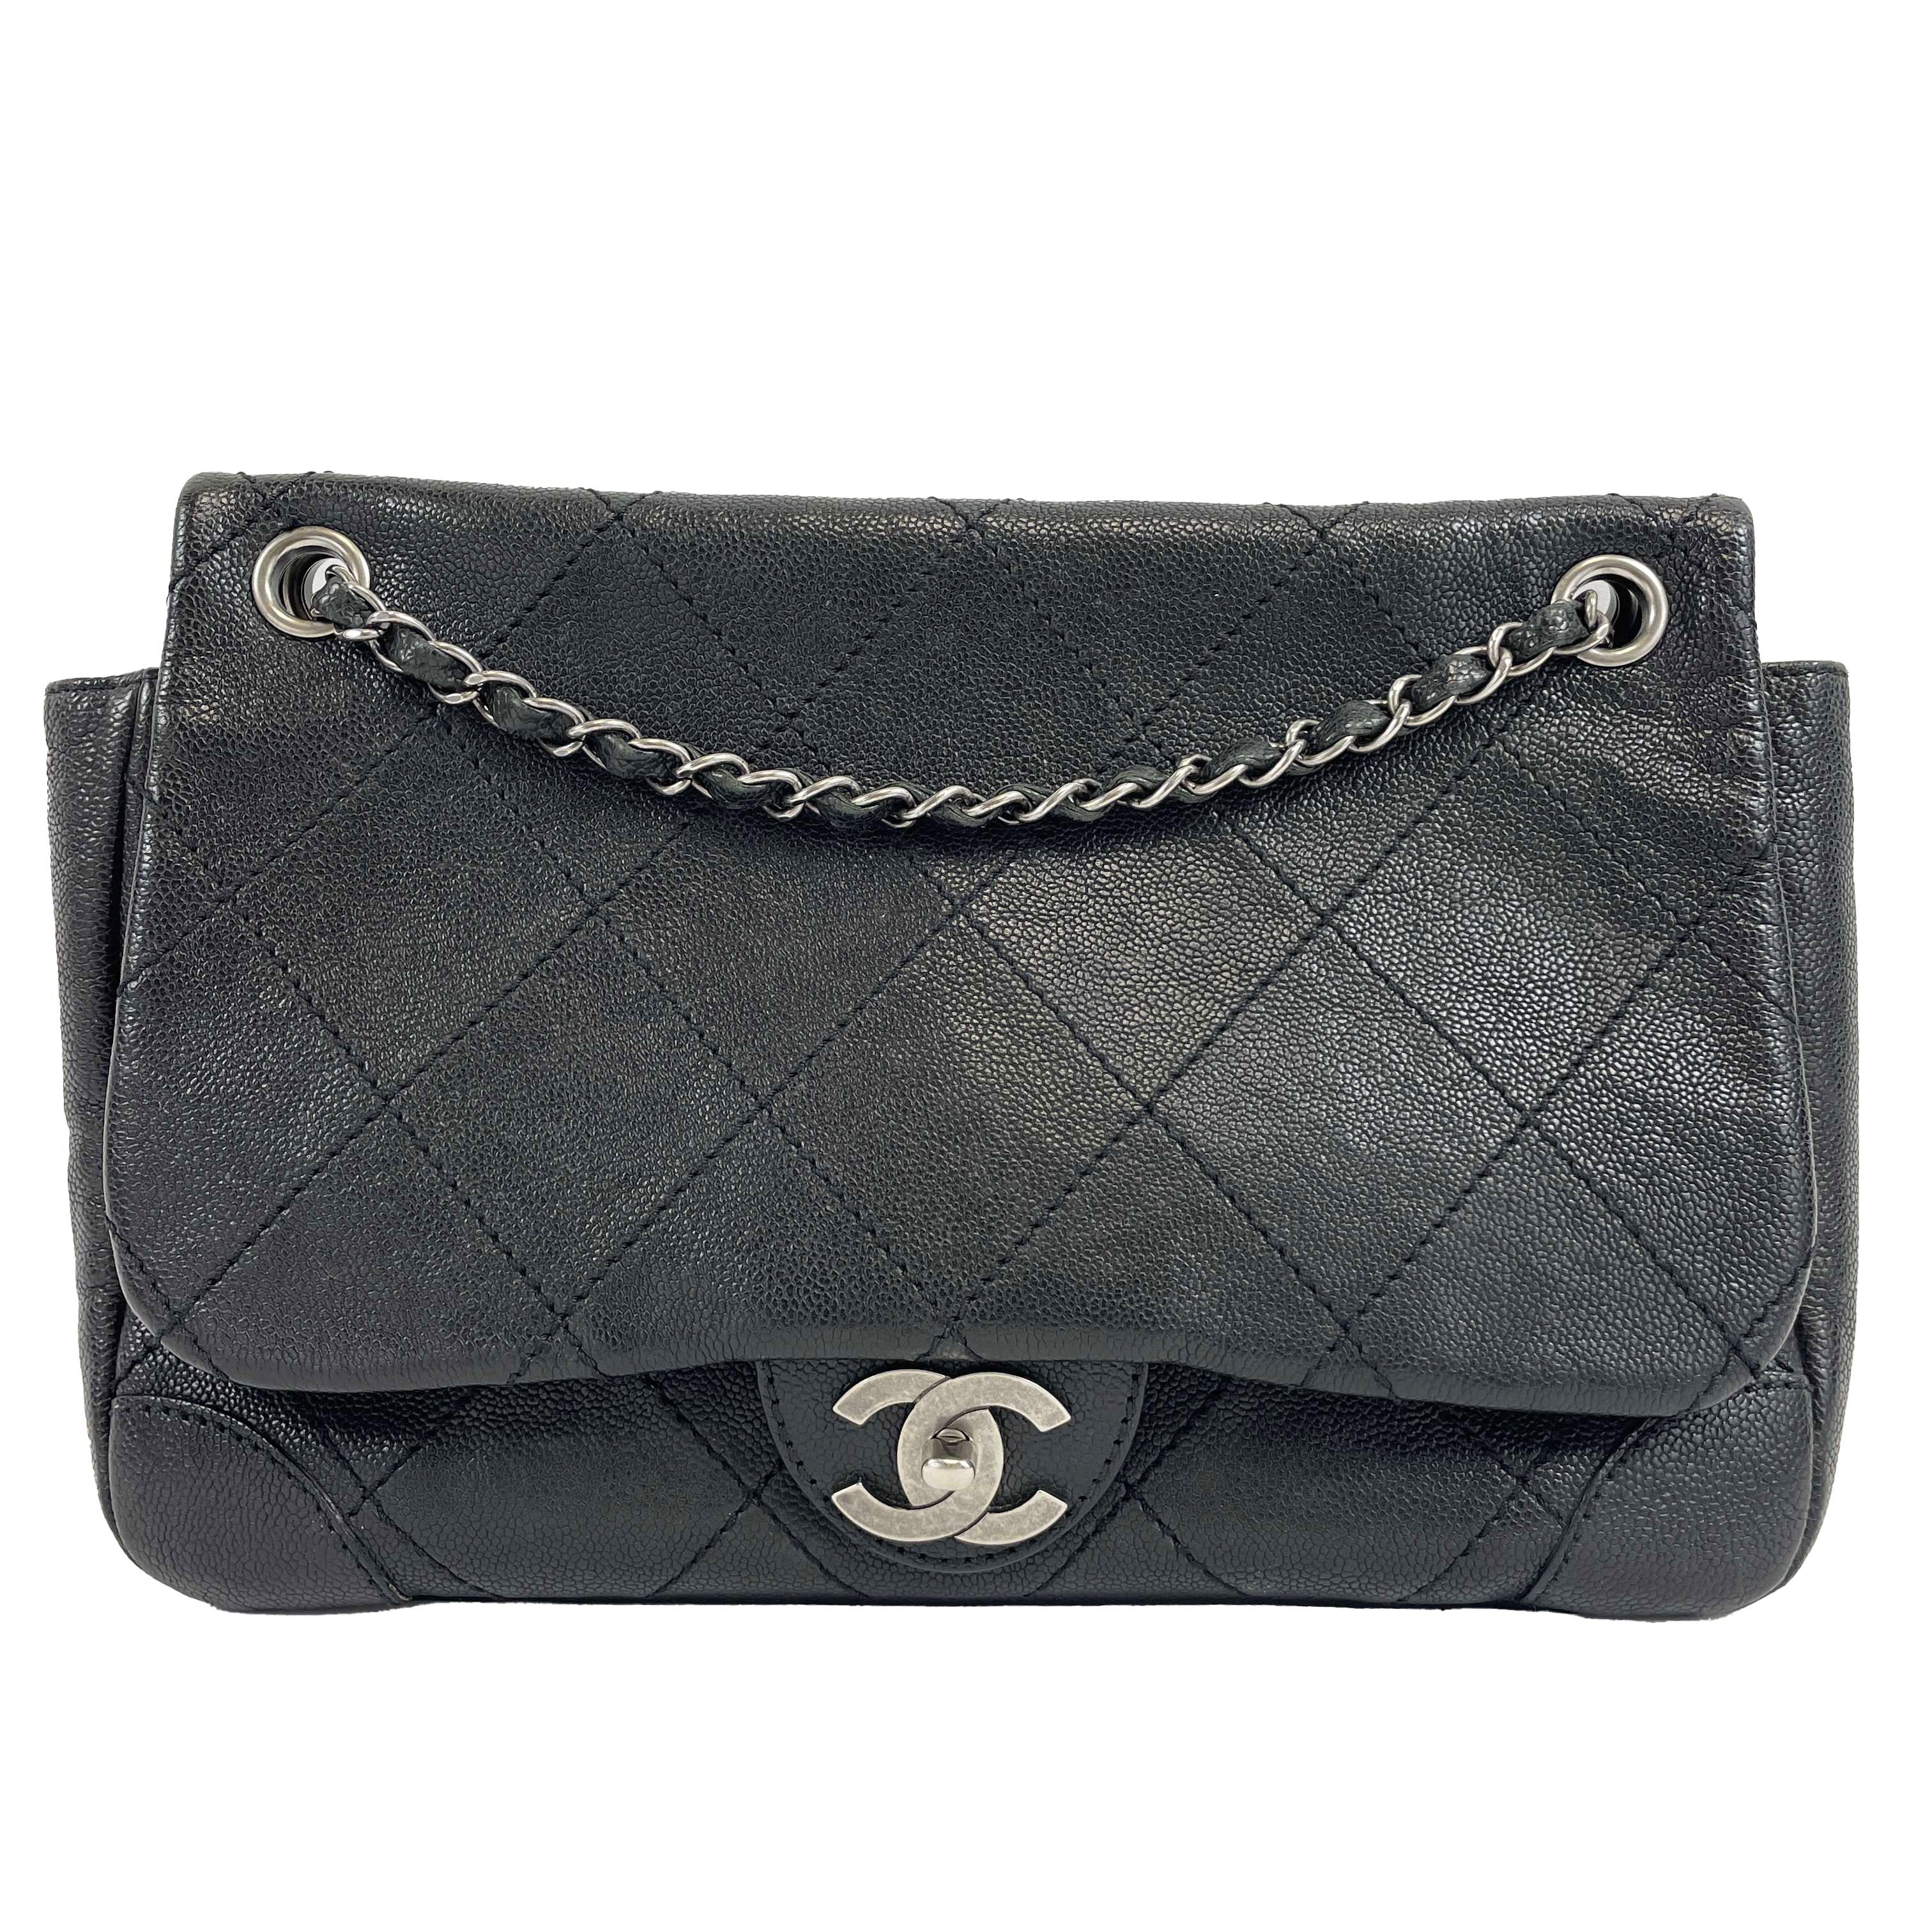 	CHANEL - CC Ligne Flap Large Bag Black / Silver Caviar Leather Shoulder Bag 16